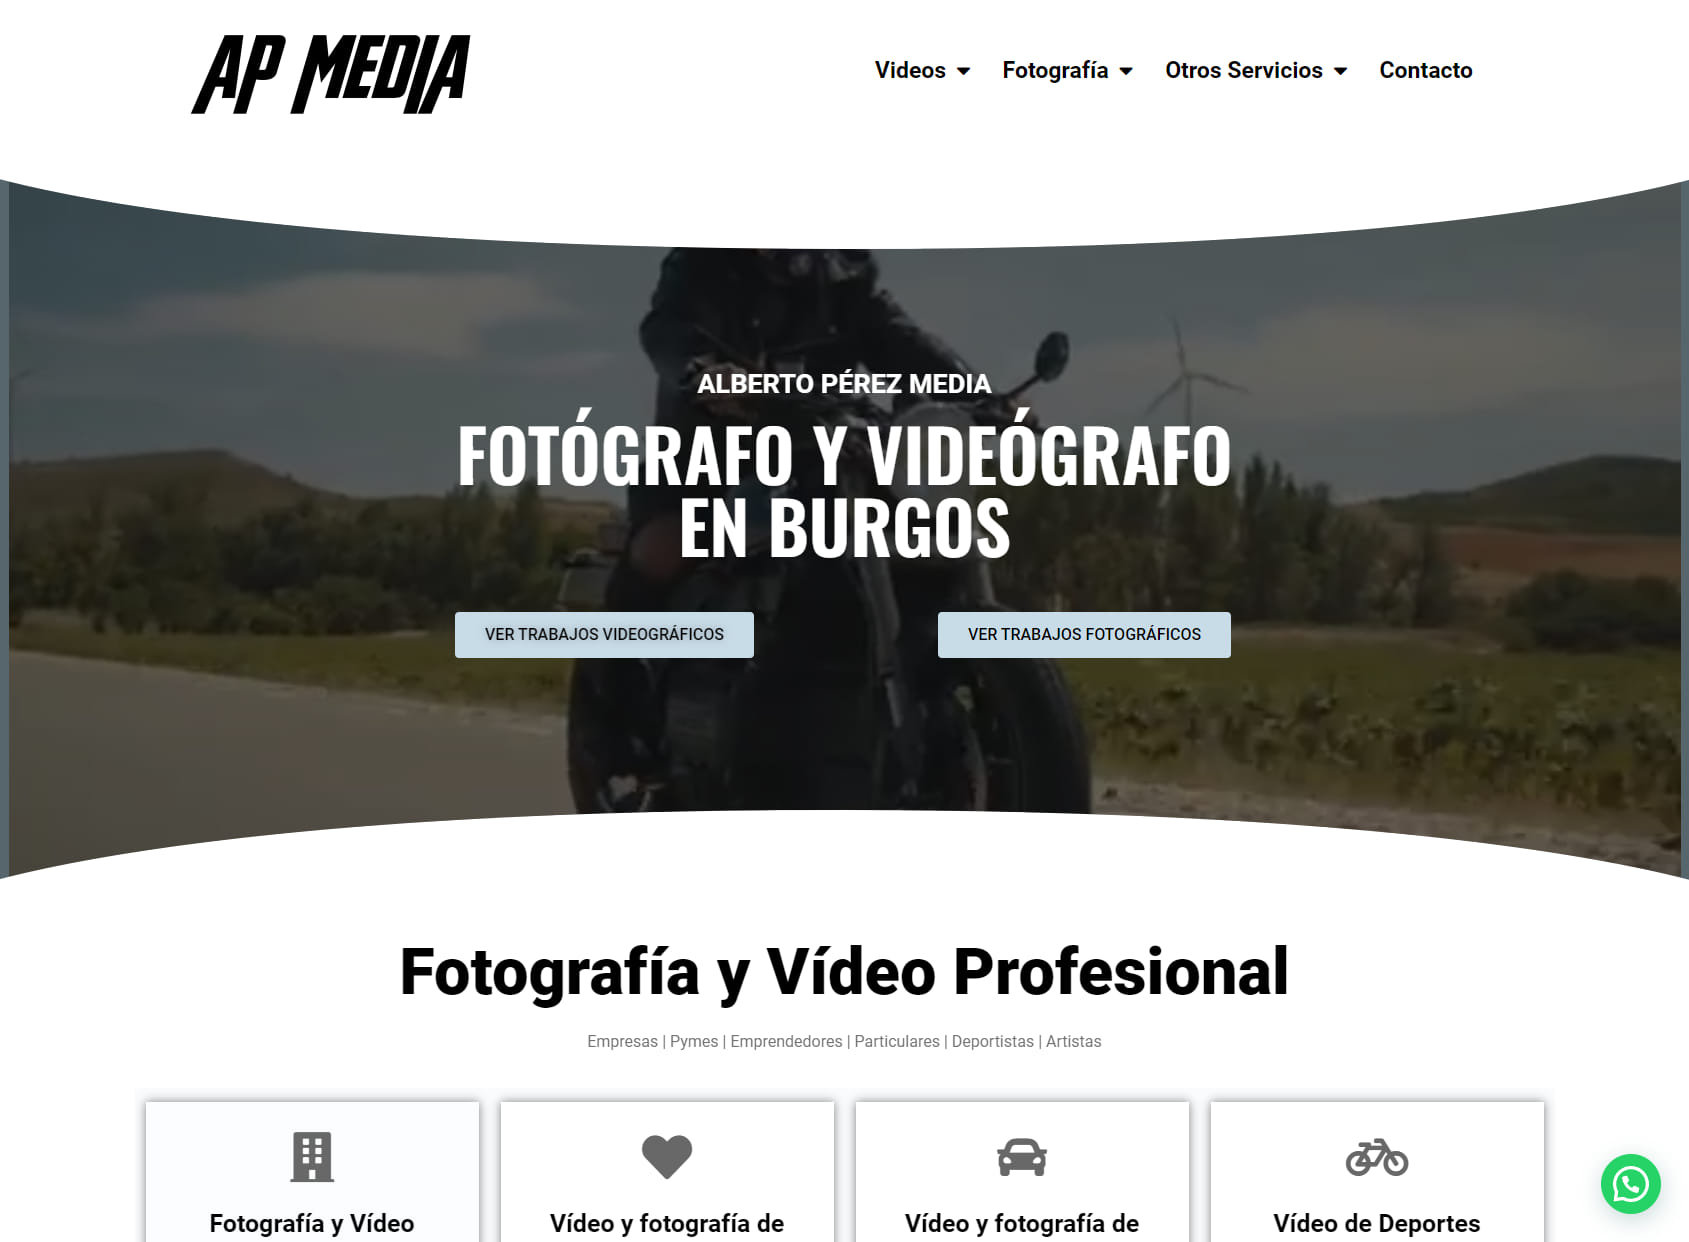 Alberto Perez Media | Fotógrafo y videógrafo